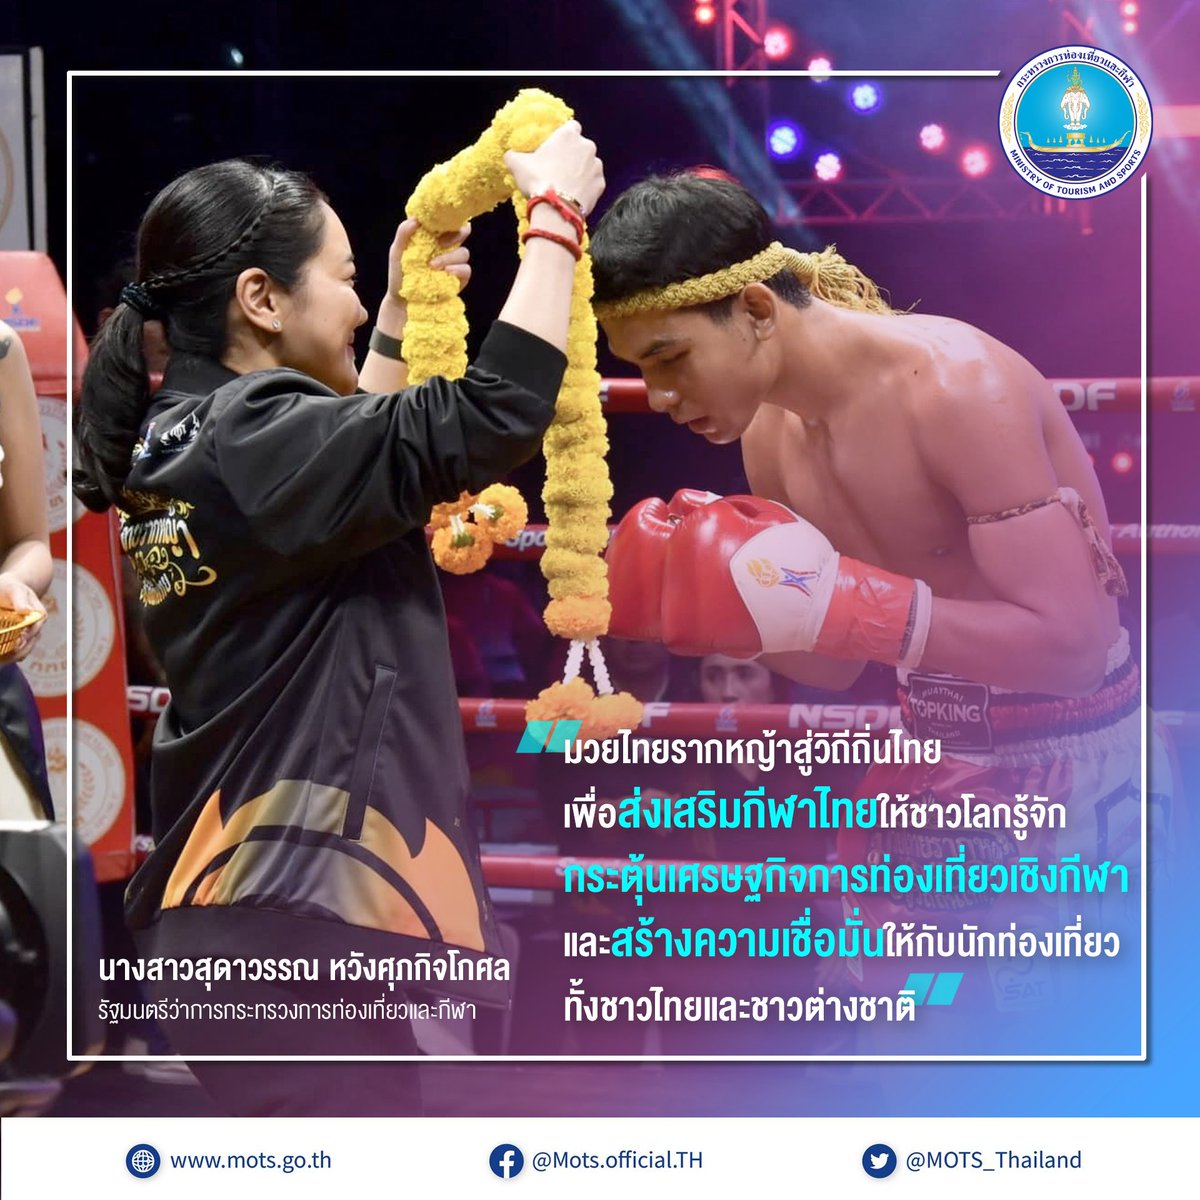 มวยไทยรากหญ้าสู่วิถีถิ่นไทย ส่งเสริมกีฬาไทยให้เป็นที่ประจักษ์สู่สายตาชาวโลก #สุดาวรรณ หวังศุภกิจโกศล รมว.กระทรวงการท่องเที่ยวและกีฬา